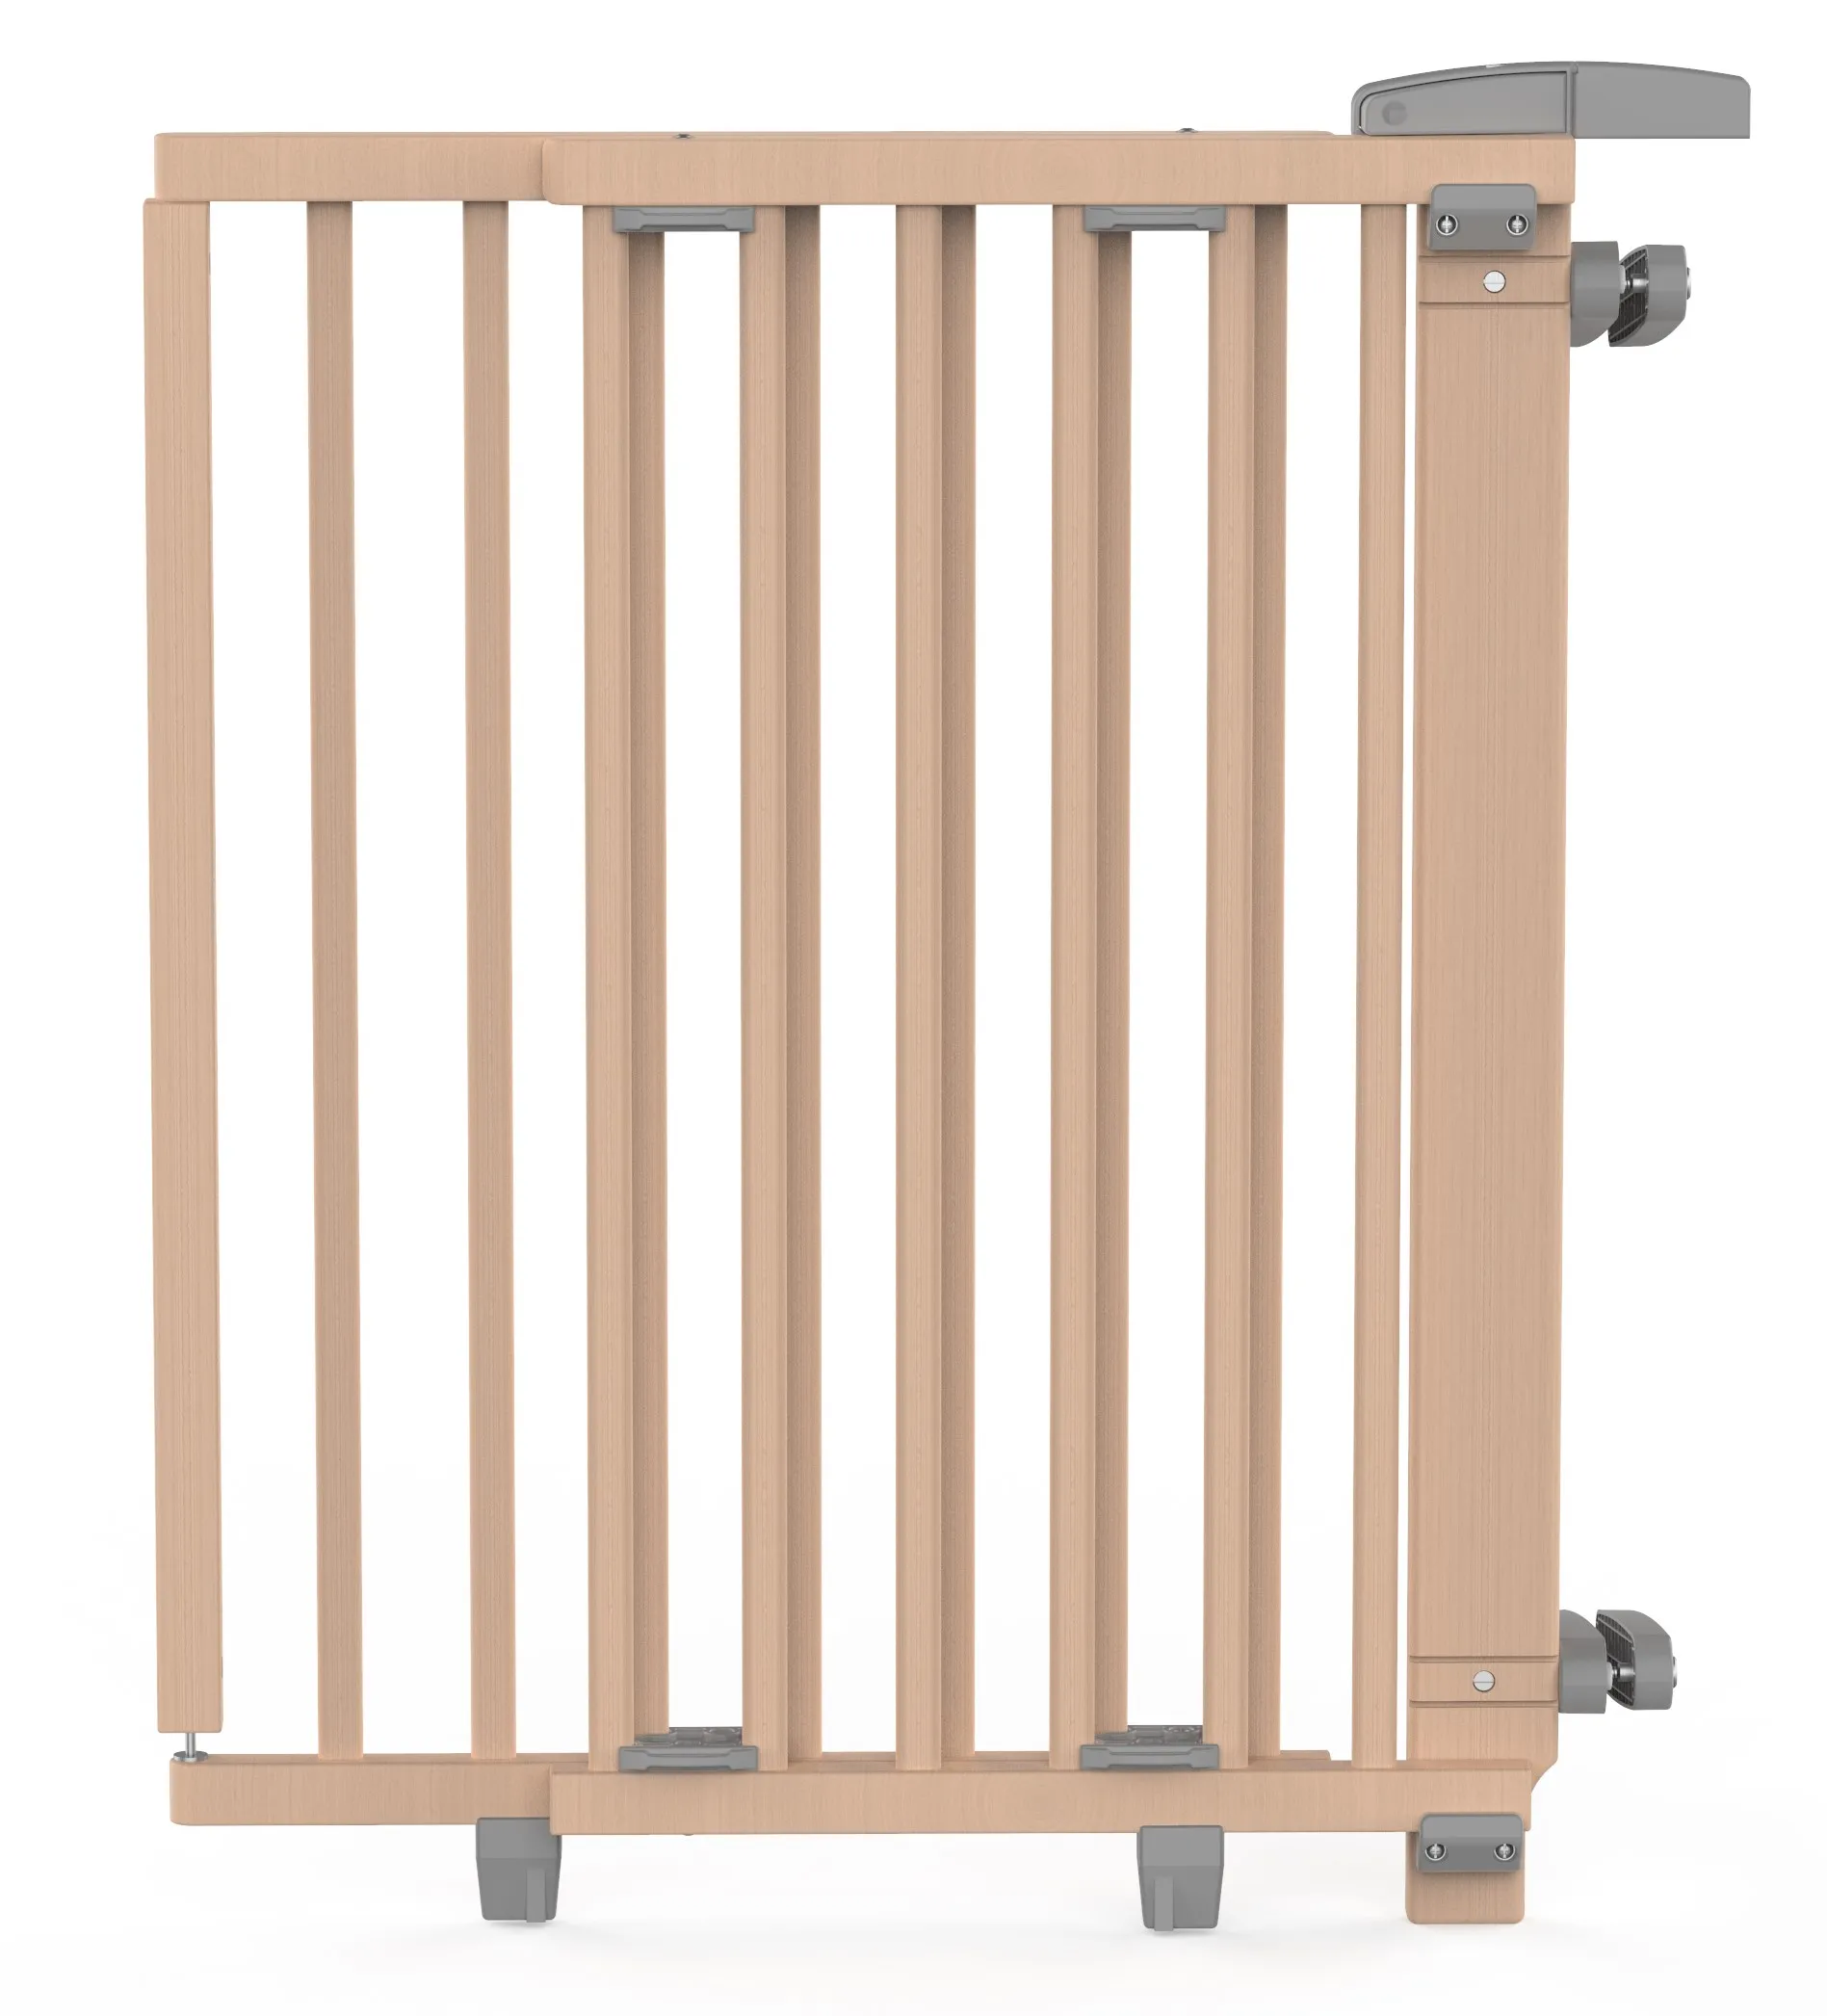 Treppenschutzgitter 2733+ für Öffnungen von 67 cm - 95 cm aus Holz